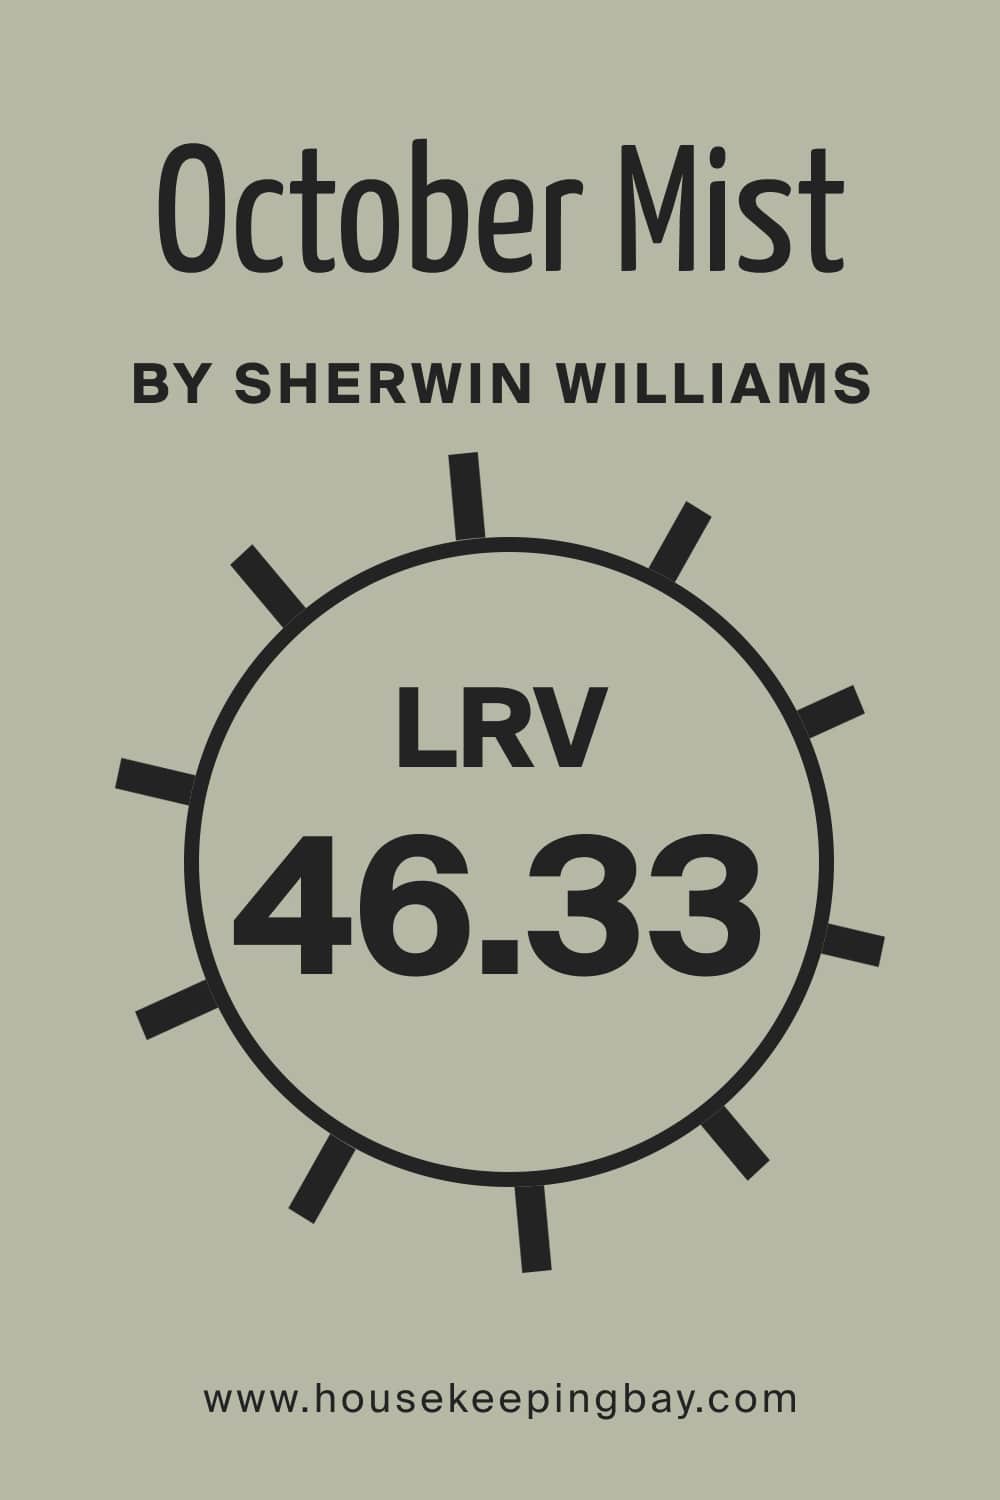 LRV is 46.33 – October Mist